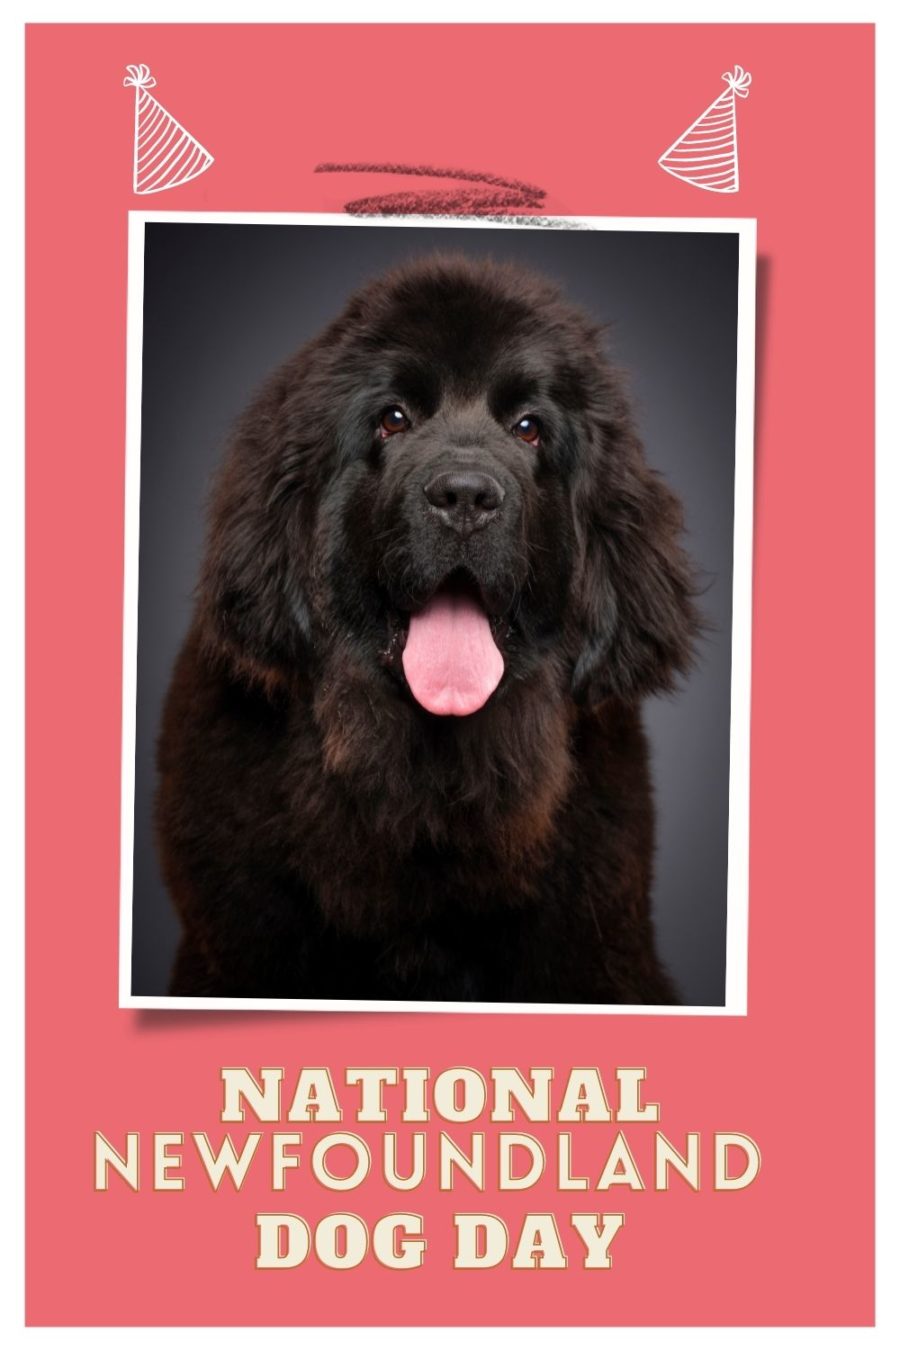 NATIONAL NEWFOUNDLAND DOG DAY